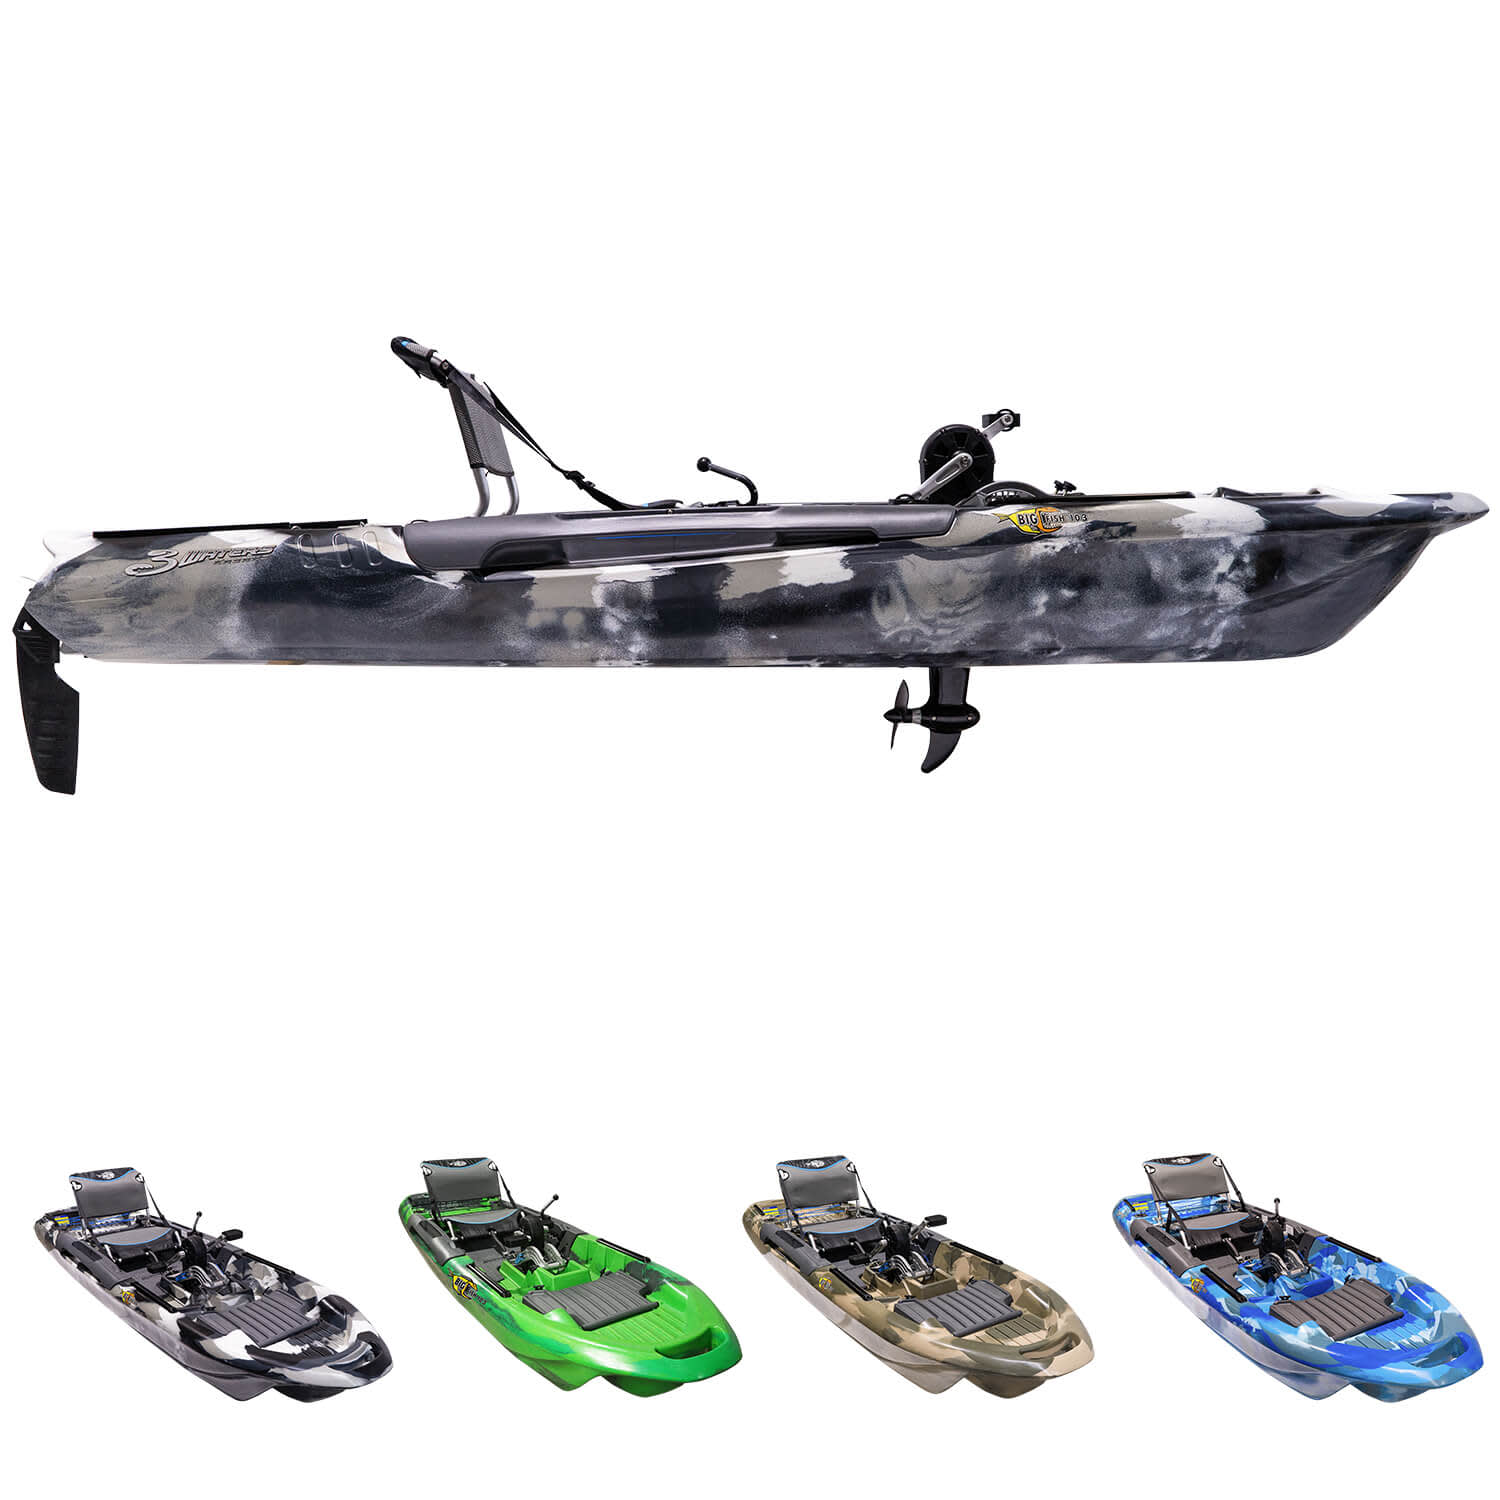 Big Fish 103 - Pedal Fishing Kayak – 3 Waters Kayaks